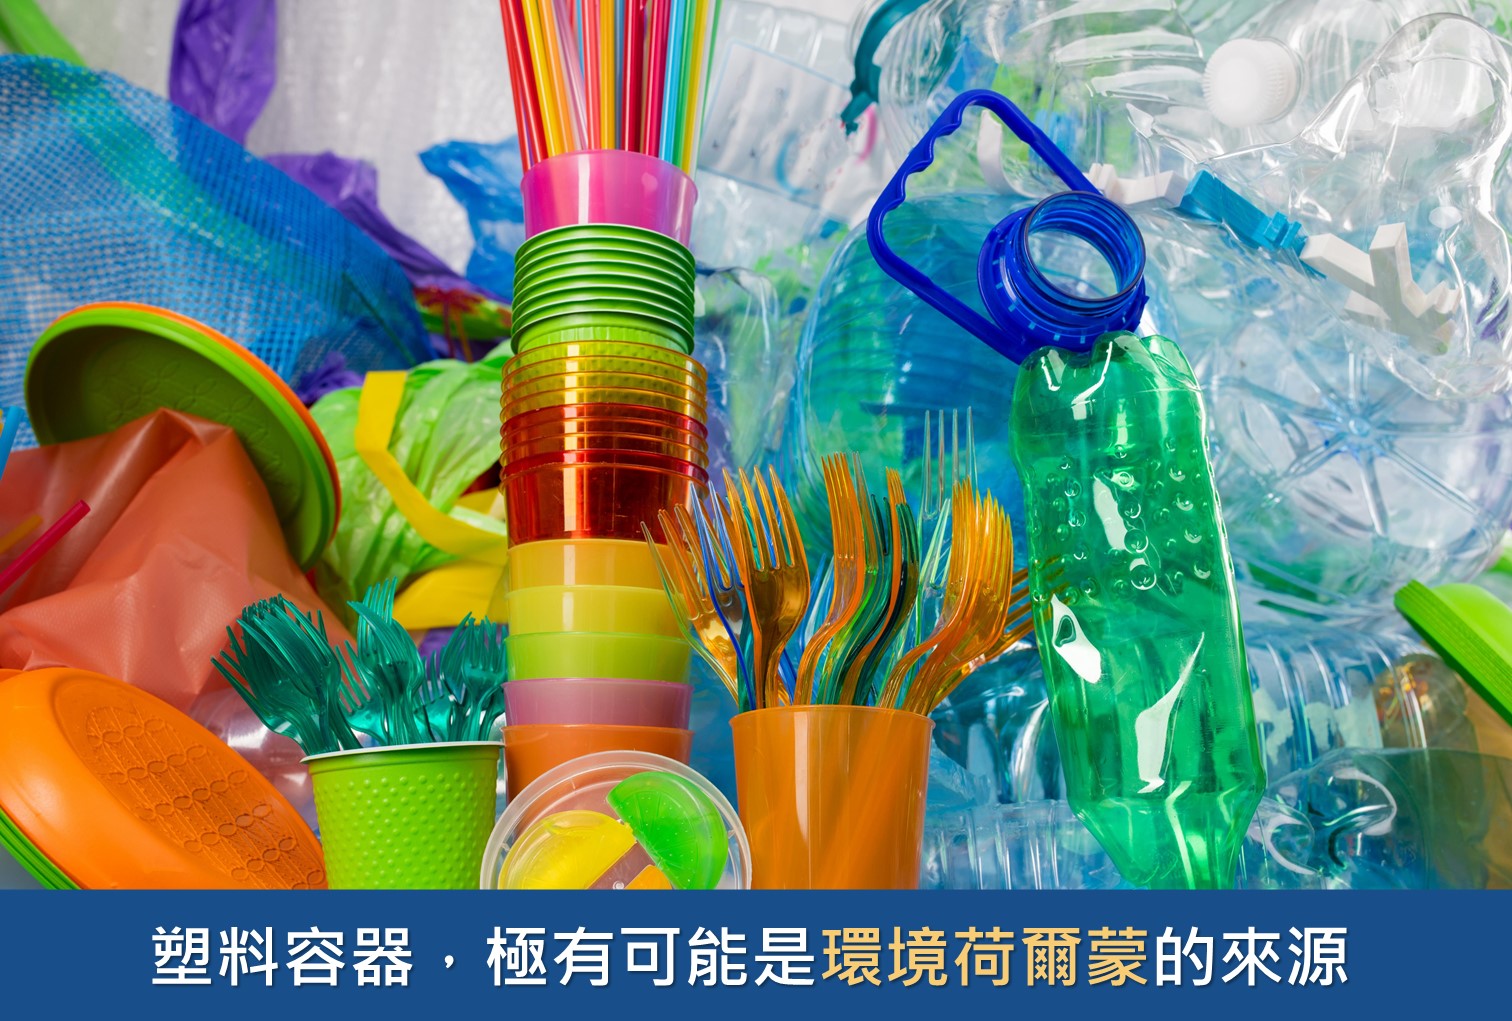 塑膠容器是環境荷爾蒙的來源